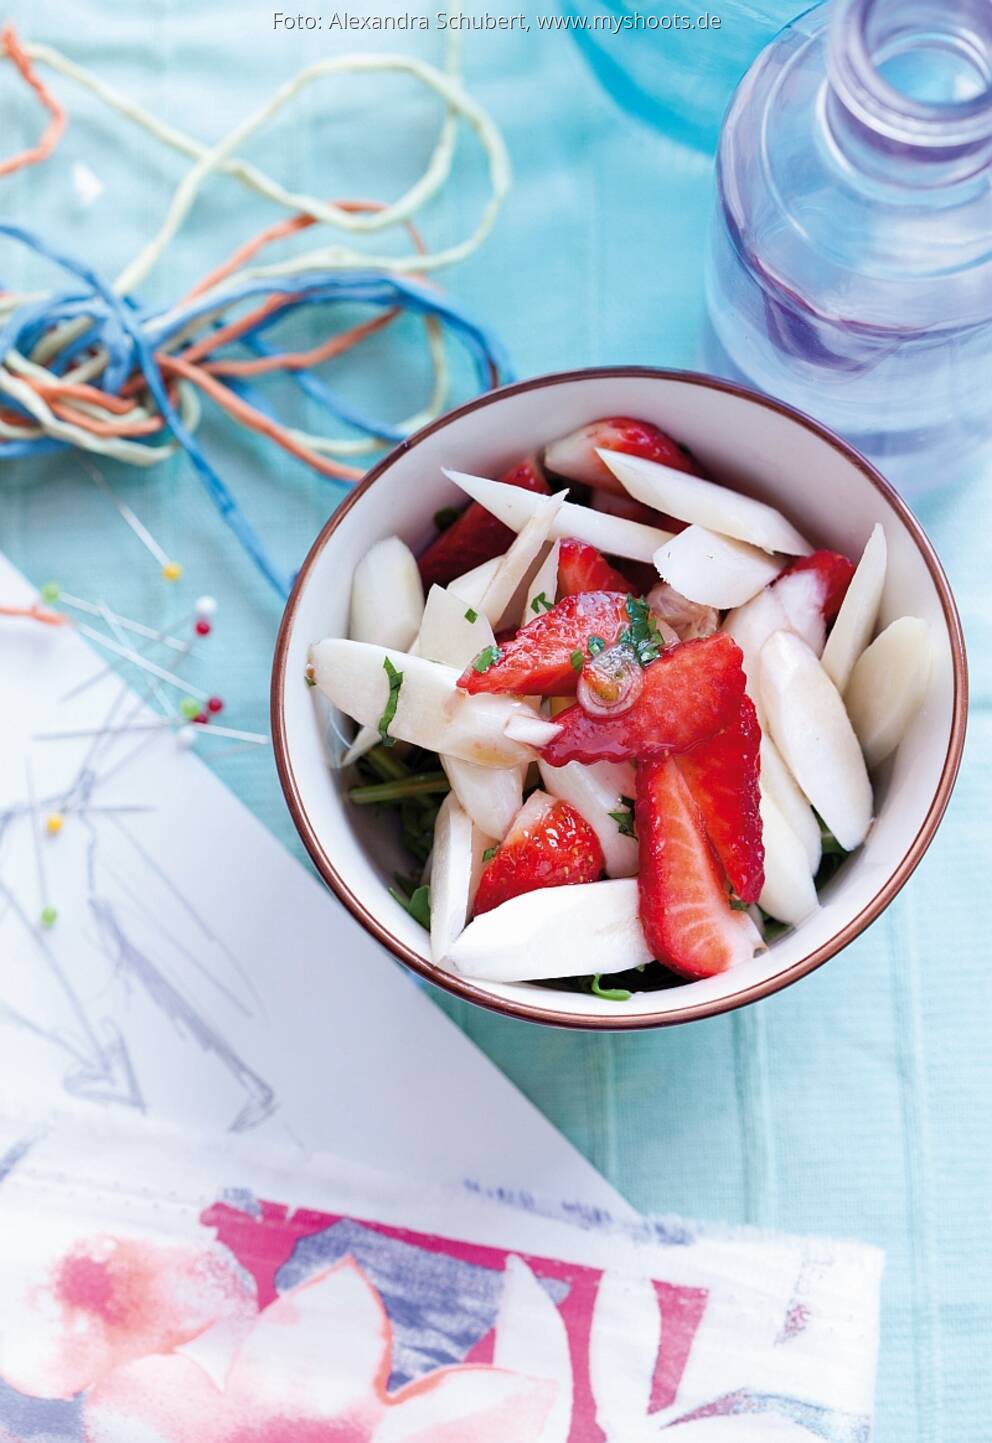 Spargel-Erdbeer-Salat mit grünem Pfeffer von Roland Rauter